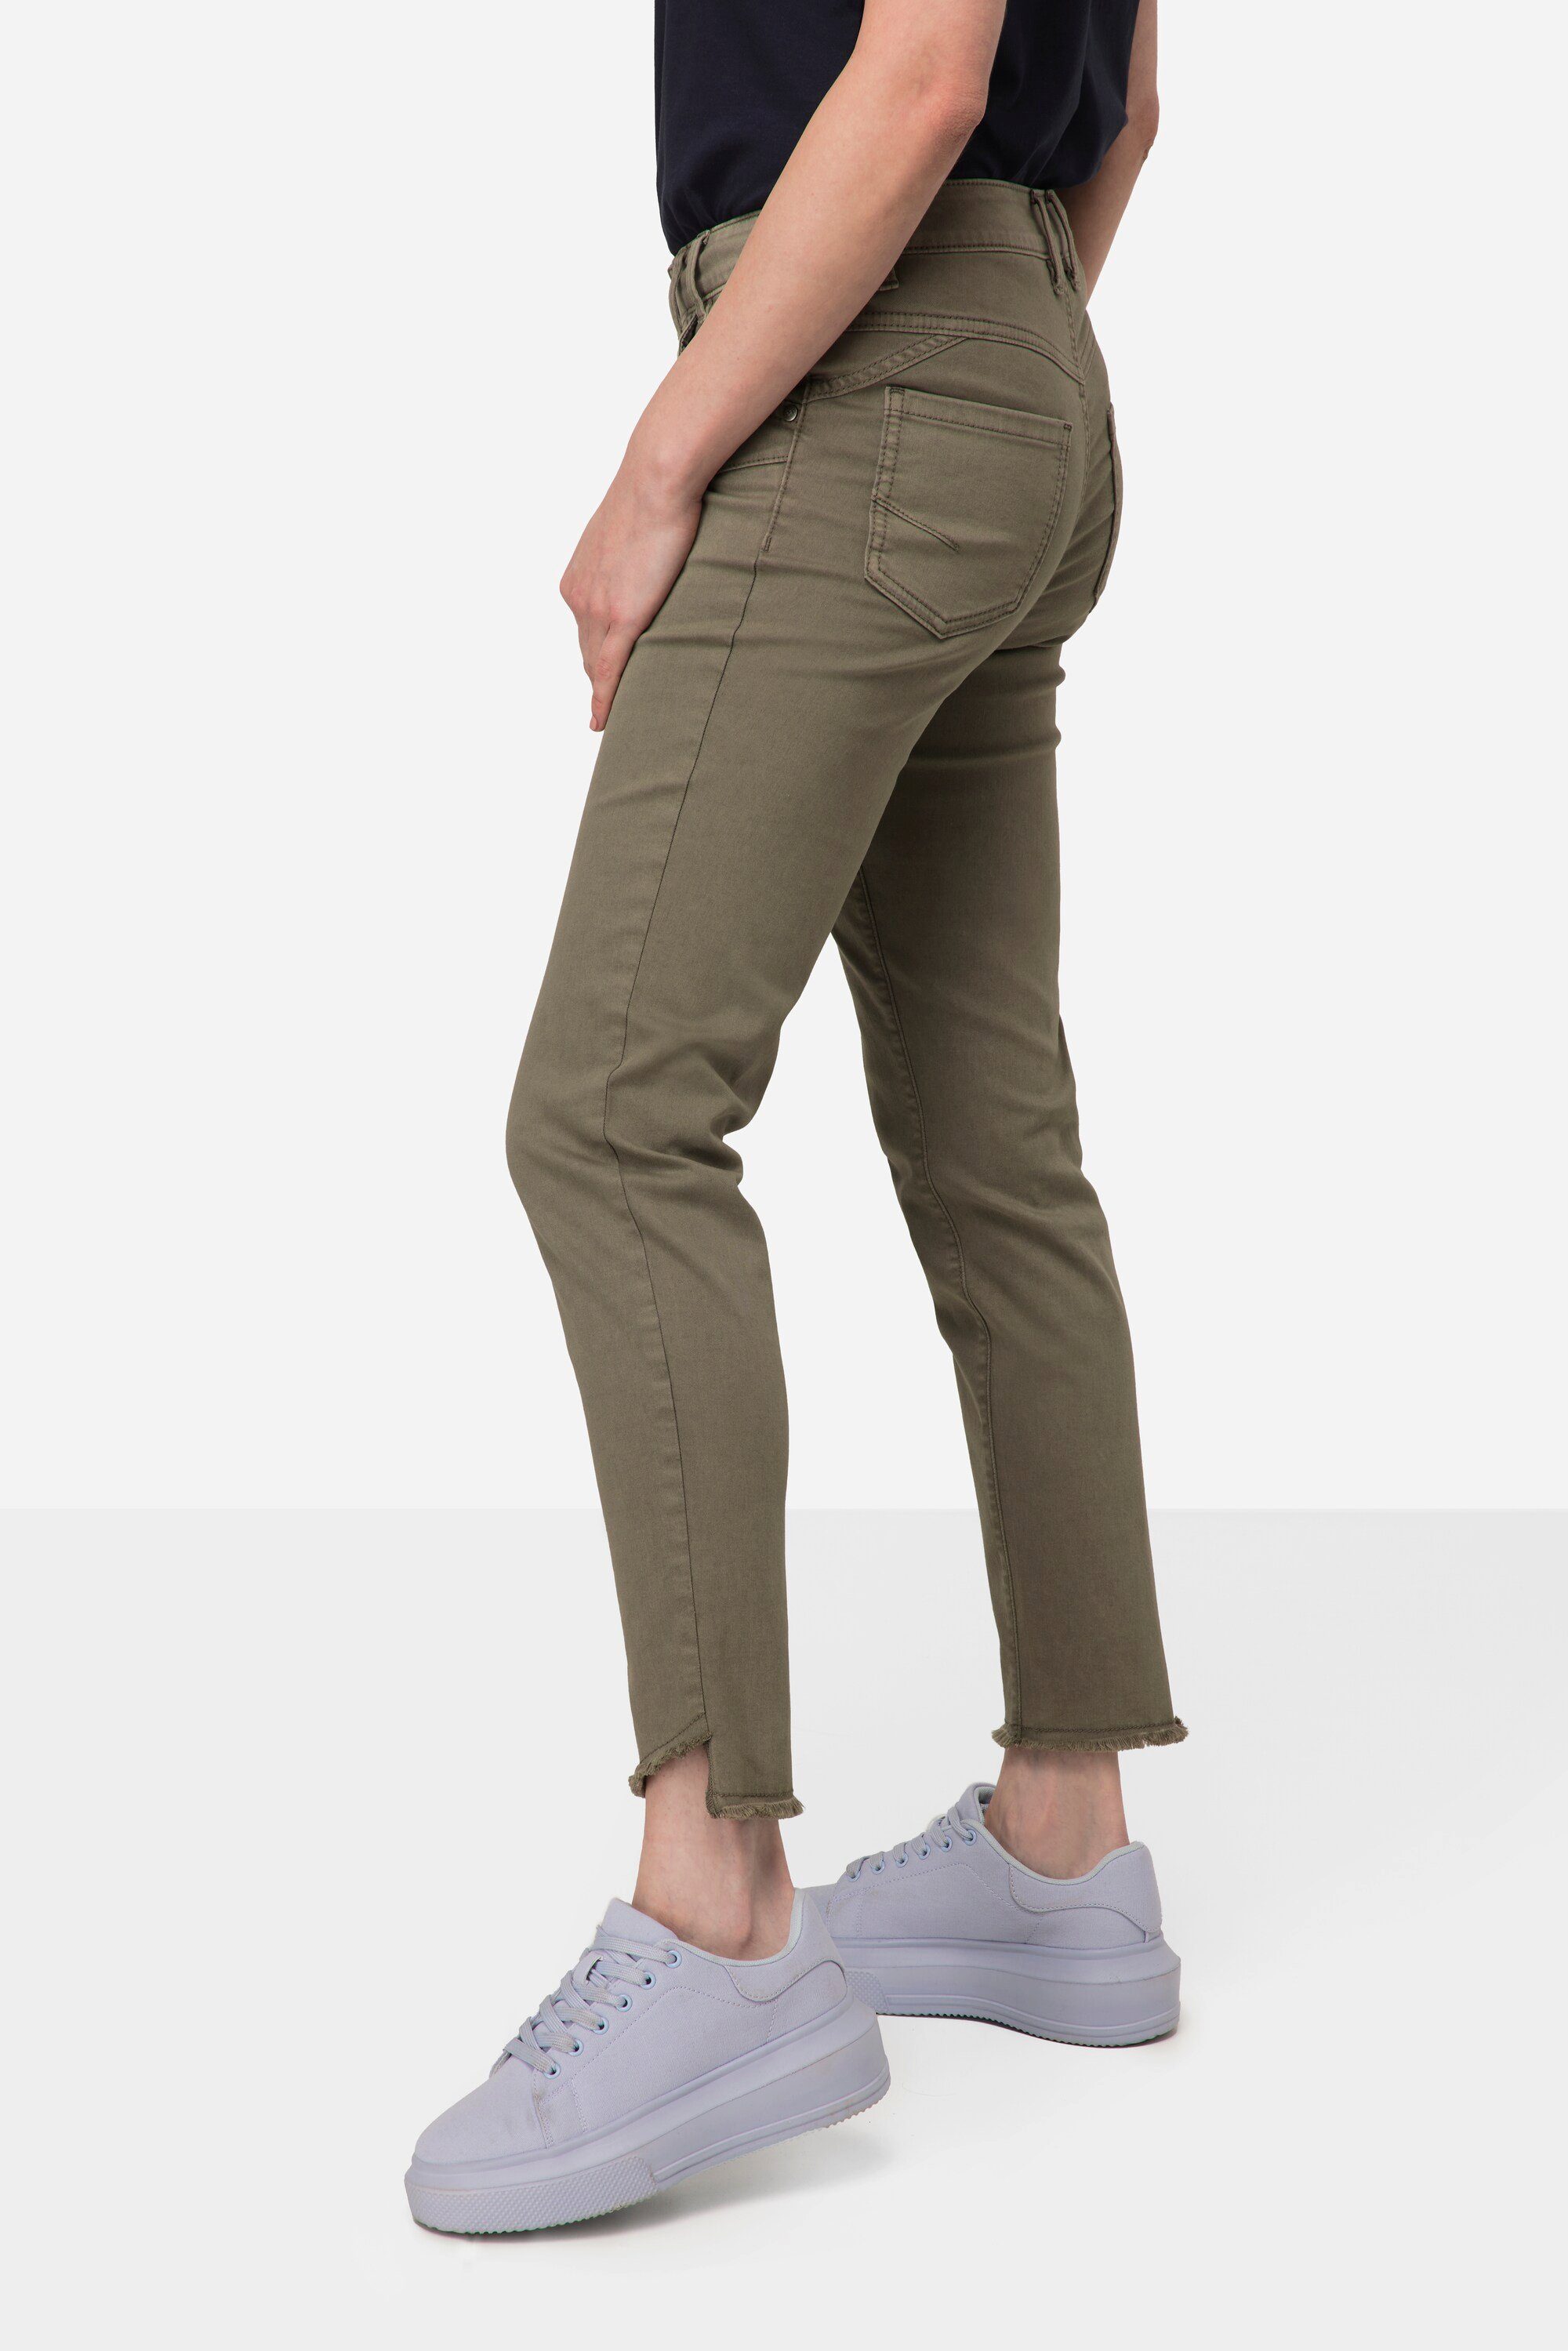 Julia 5-Pocket grau schmale Passform Jeans Röhrenjeans Color Laurasøn